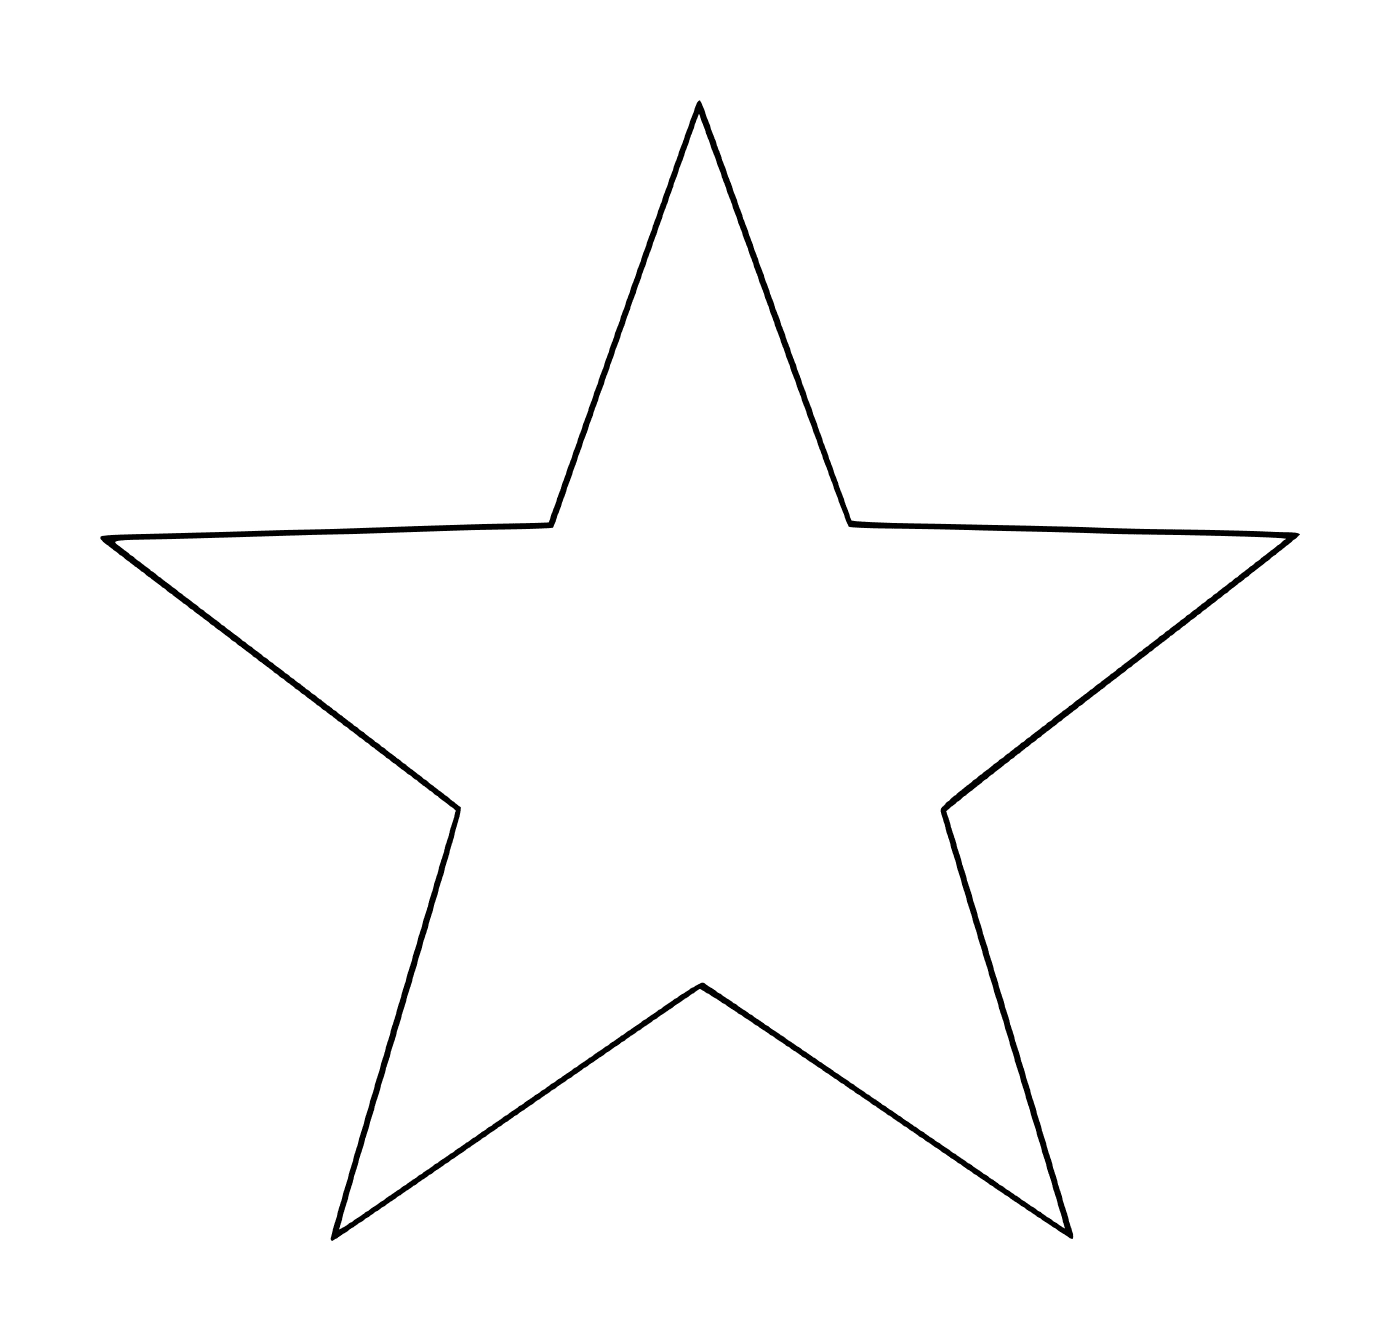  Una stella a 5 rami facile da creare per i bambini 